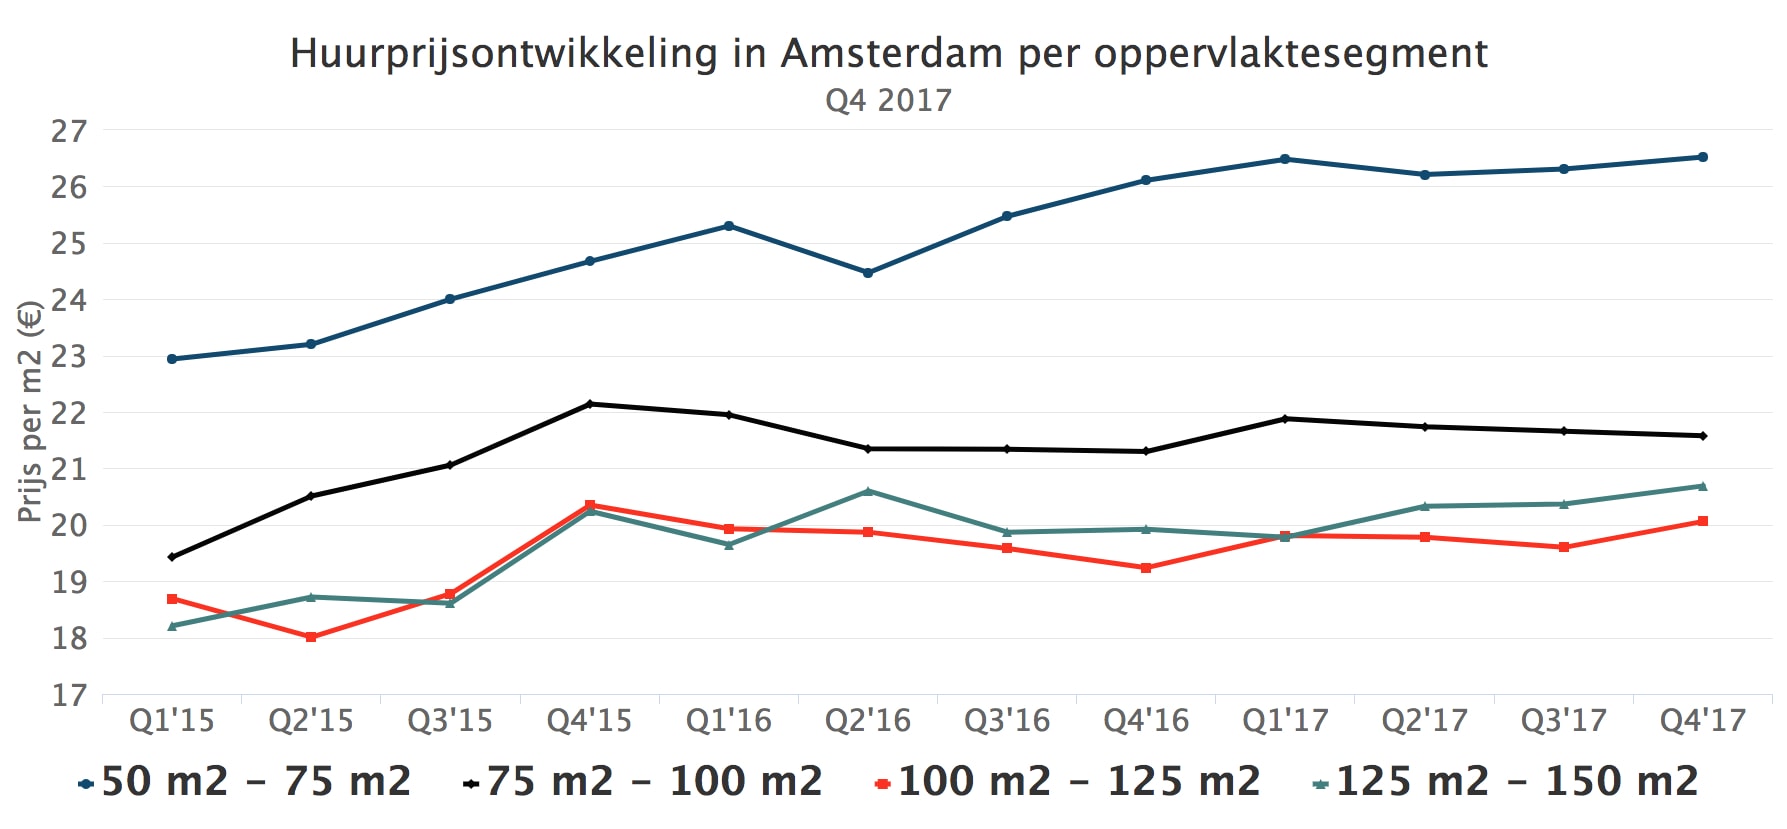 Huurprijsontwikkeling In Amsterdam Per Oppervlaktesegment